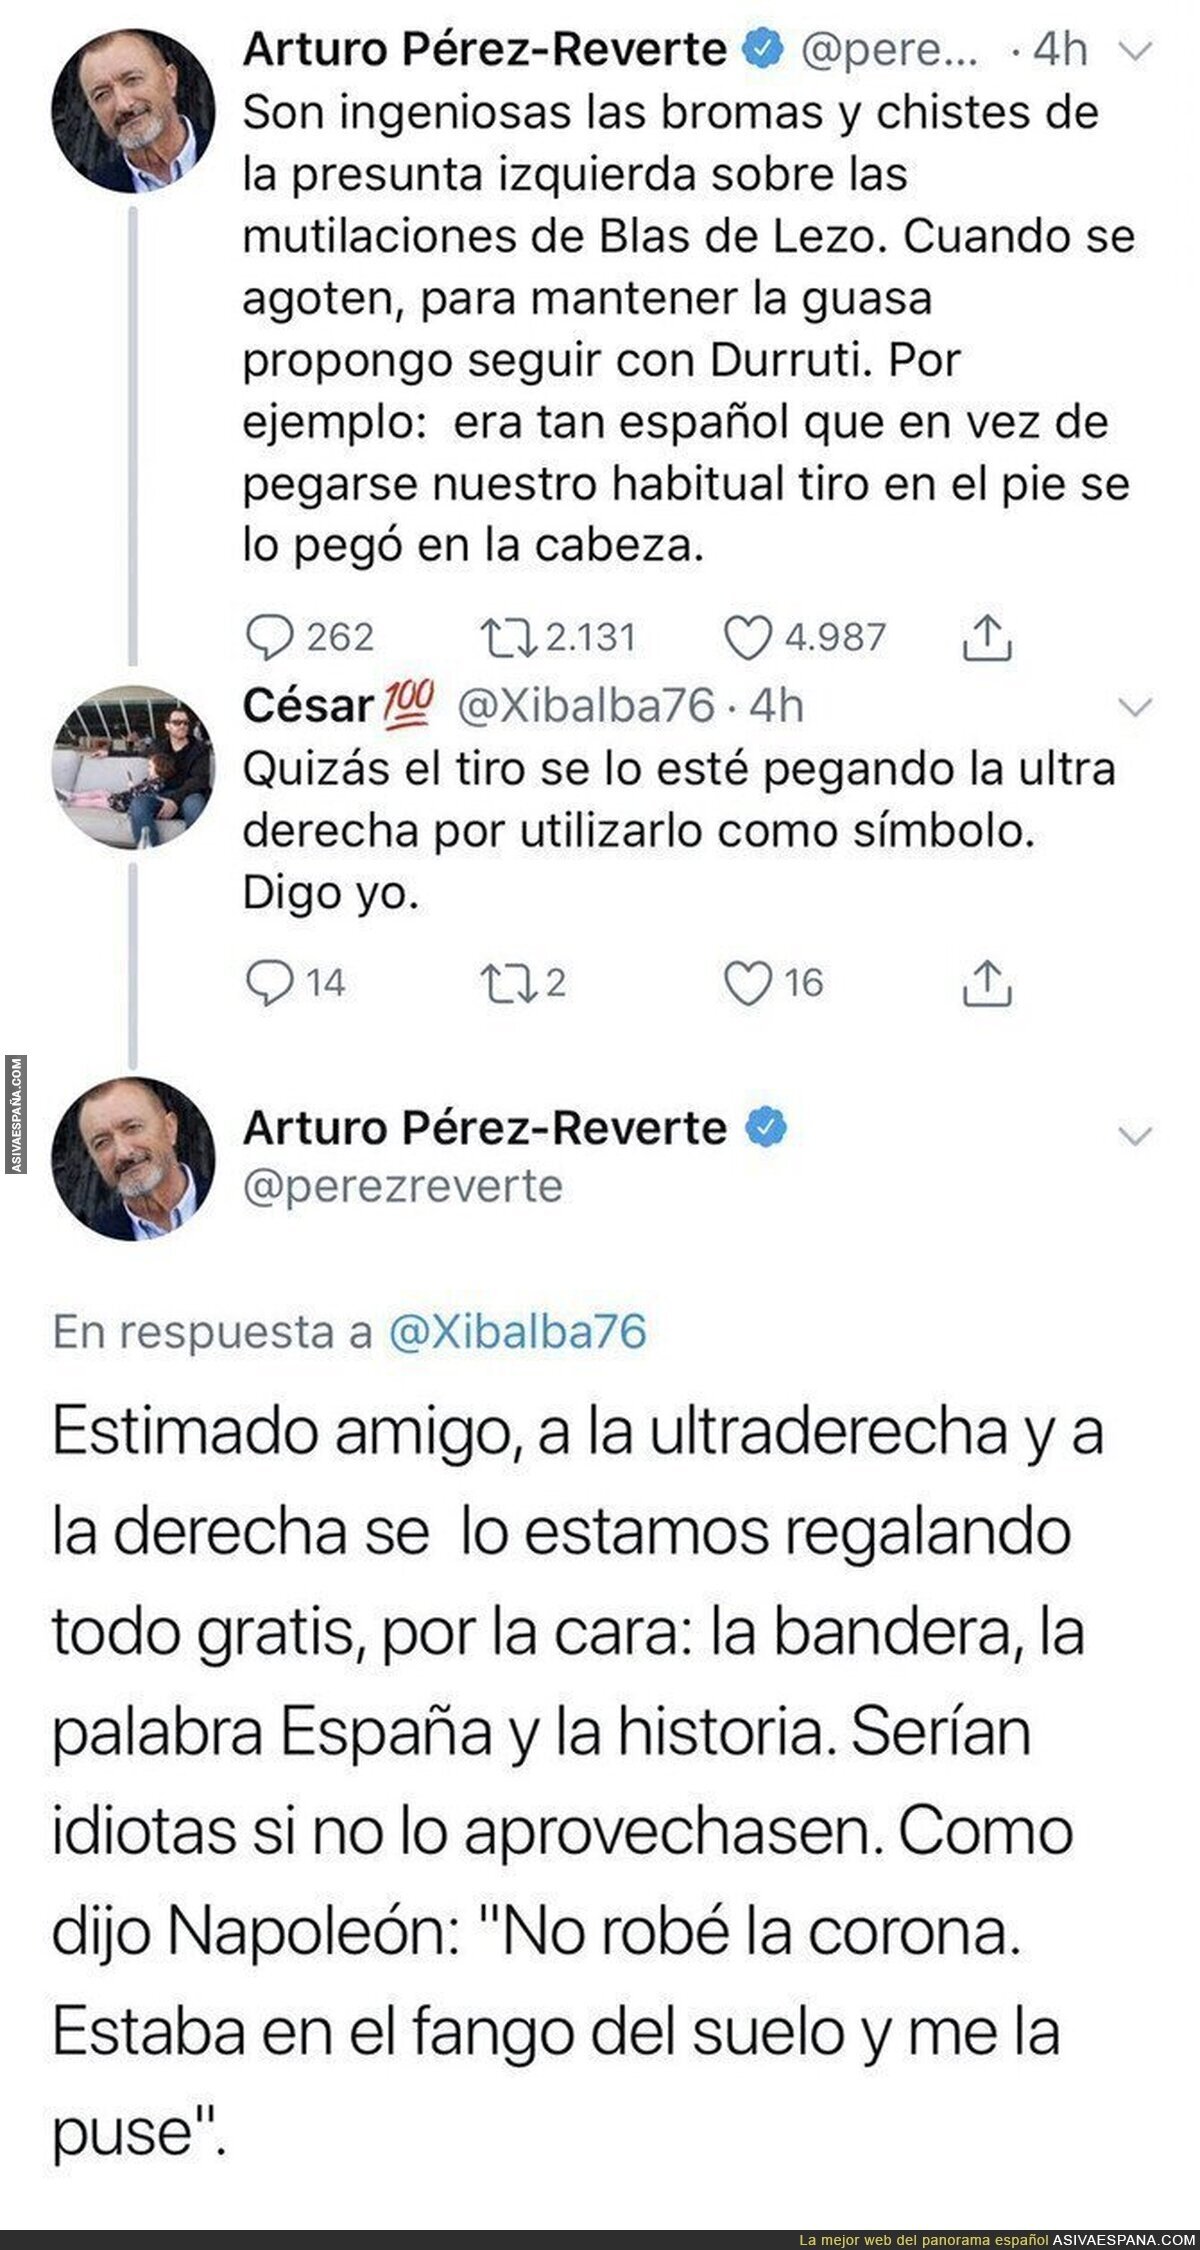 Arturo Pérez-Reverte carga contra la 'presunta izquierda' y las bromas a Blas de Lezo y le pega una respuestaza a un tuitero